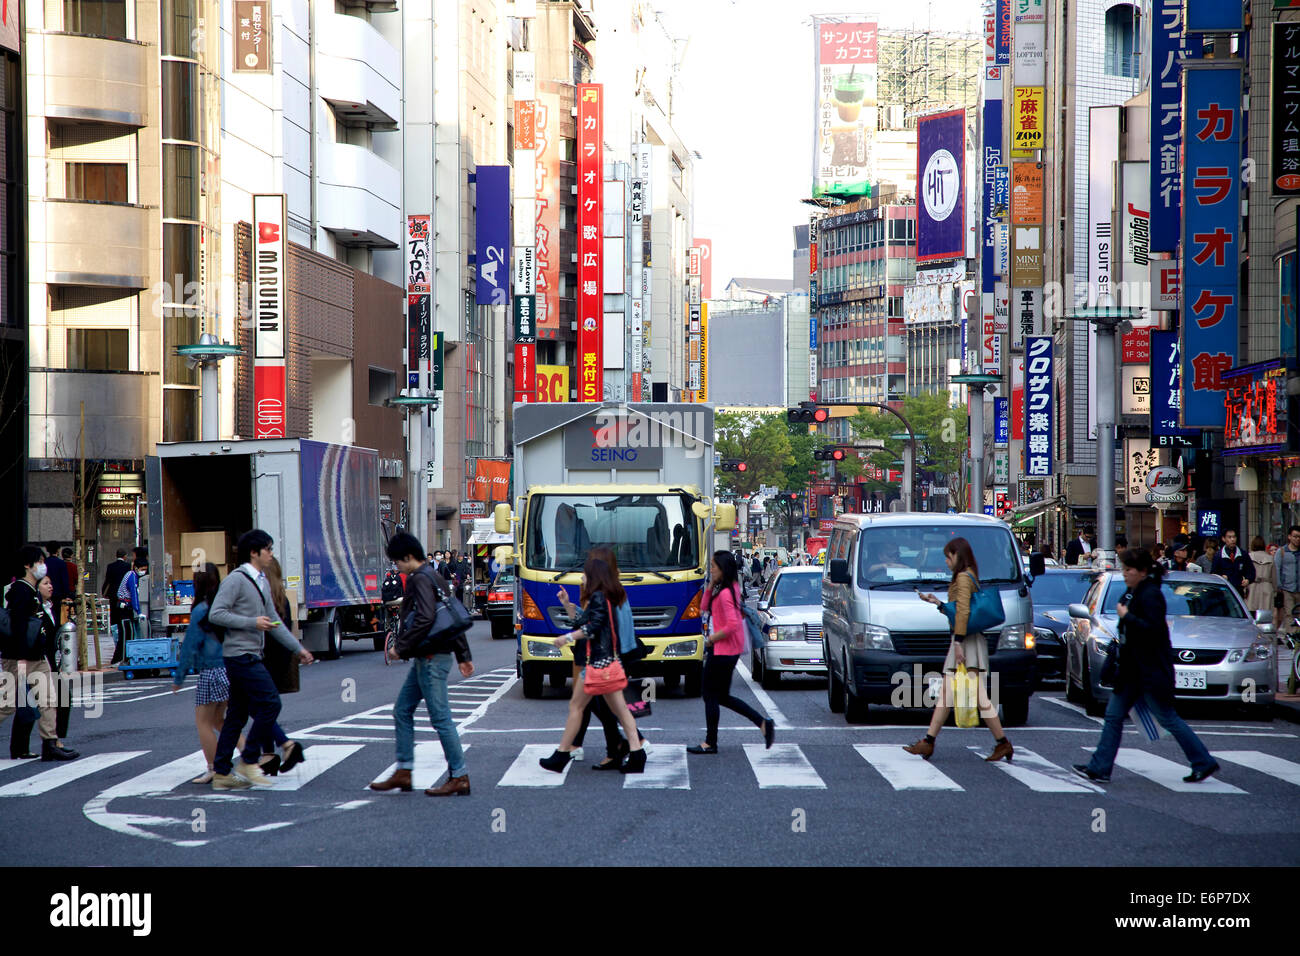 Persone, pedoni che attraversano la strada, automobili e traffico. Il quartiere Shibuya, Tokyo, Giappone, Asia Foto Stock